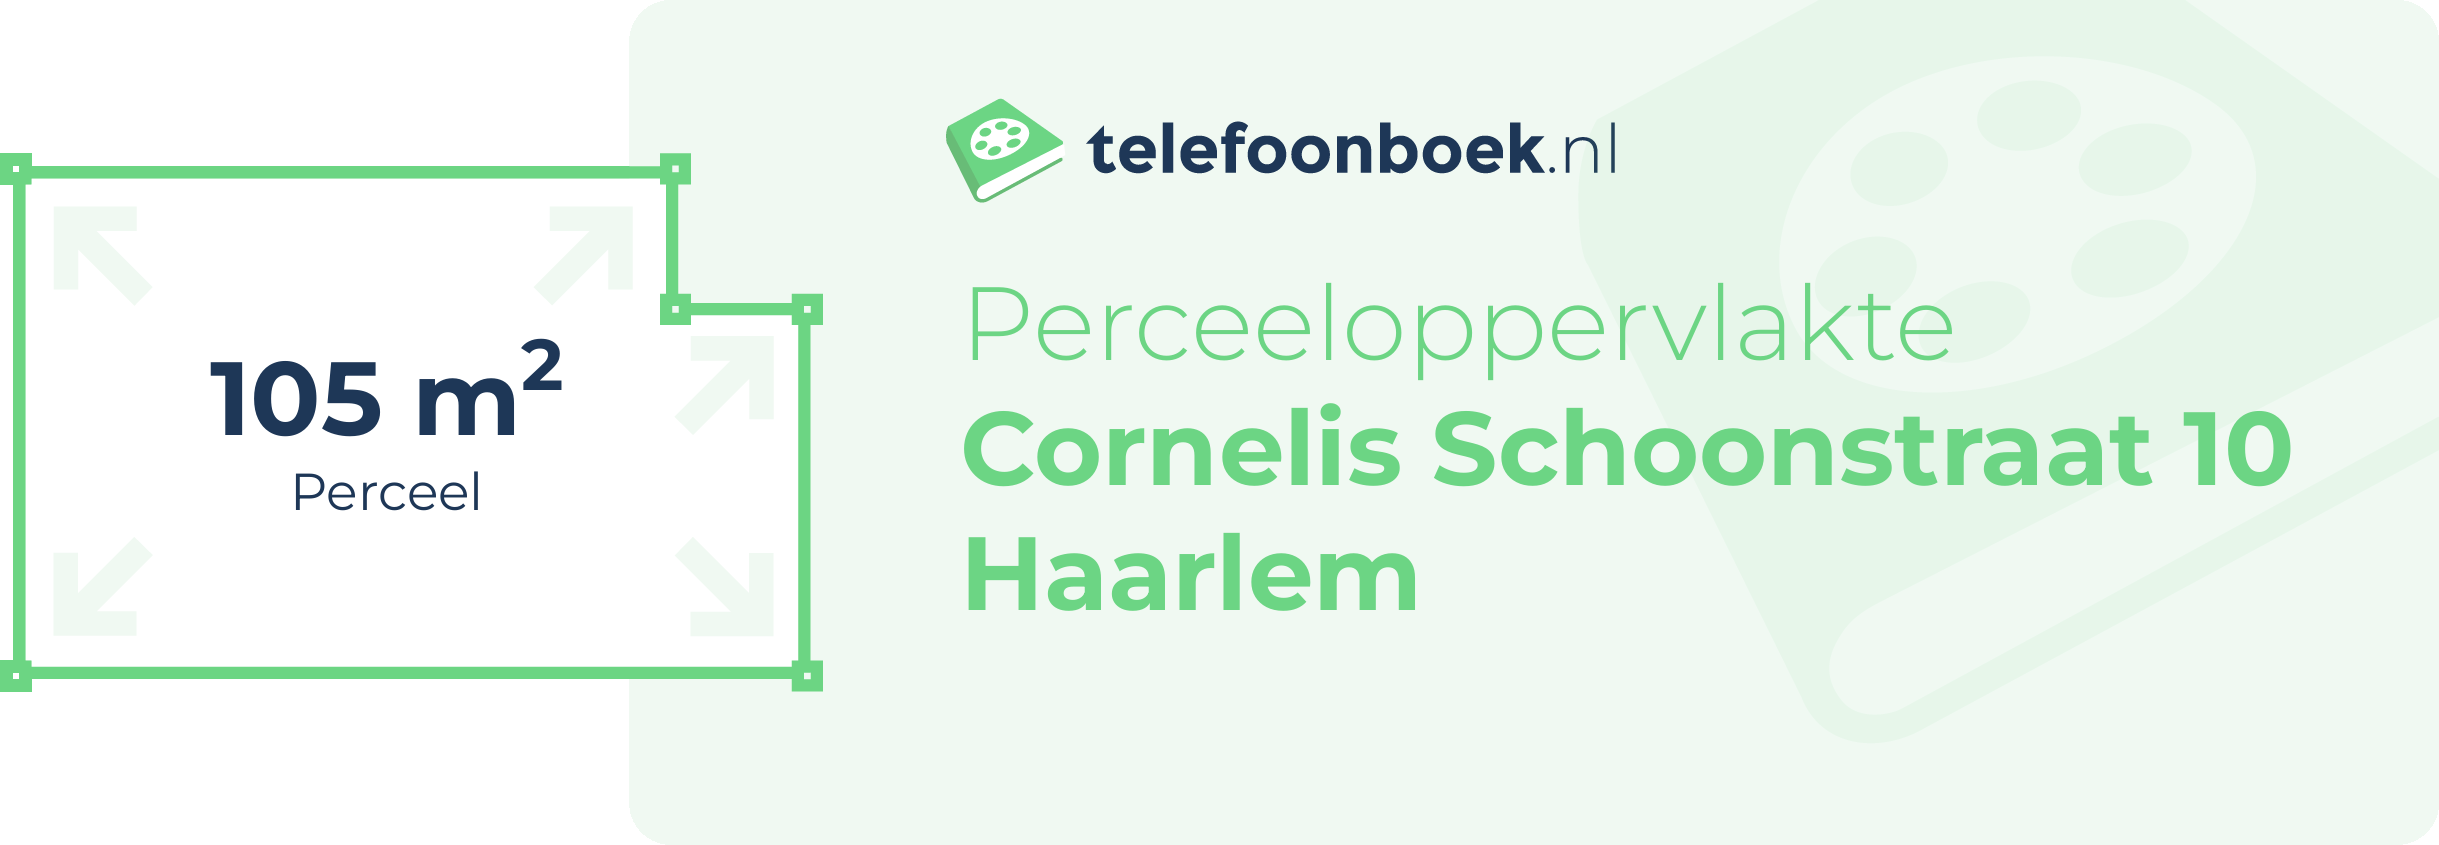 Perceeloppervlakte Cornelis Schoonstraat 10 Haarlem